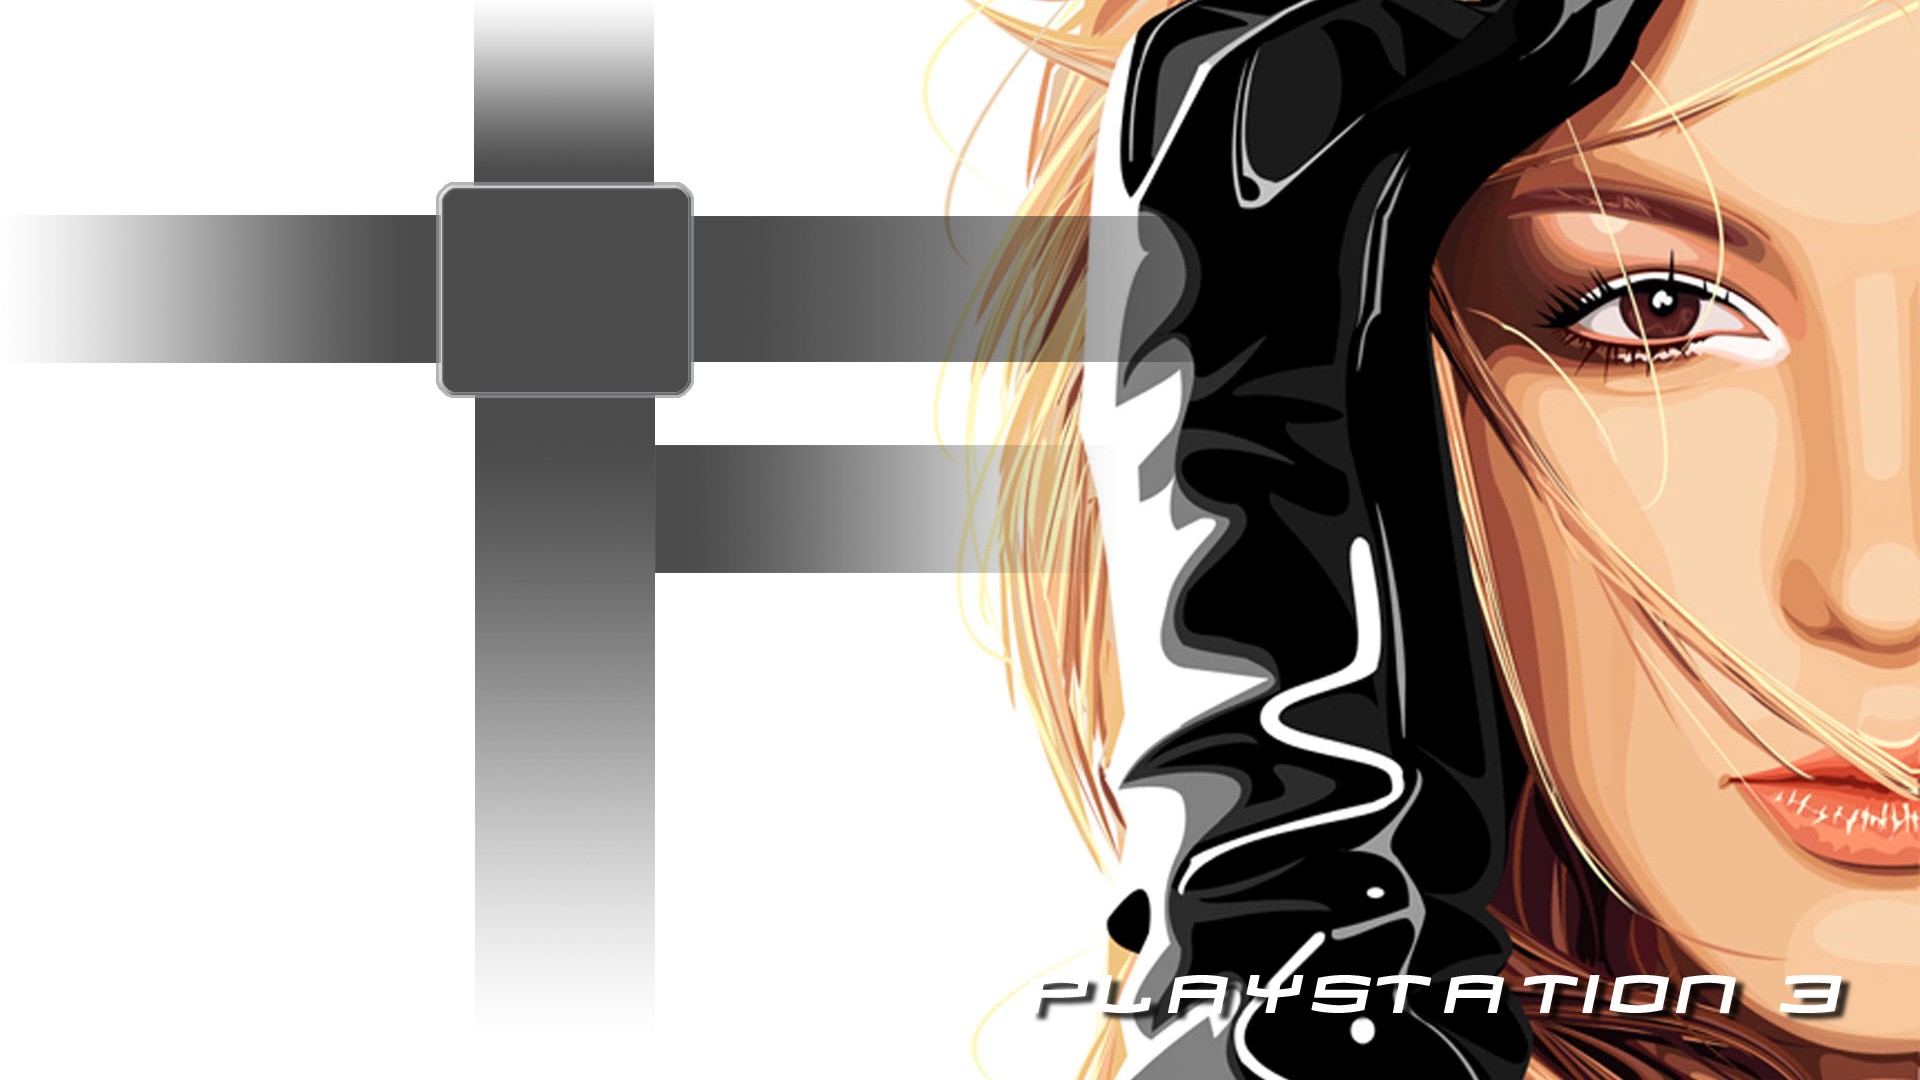 women, Britney Spears, cartoonish, Playstation 3 - desktop wallpaper